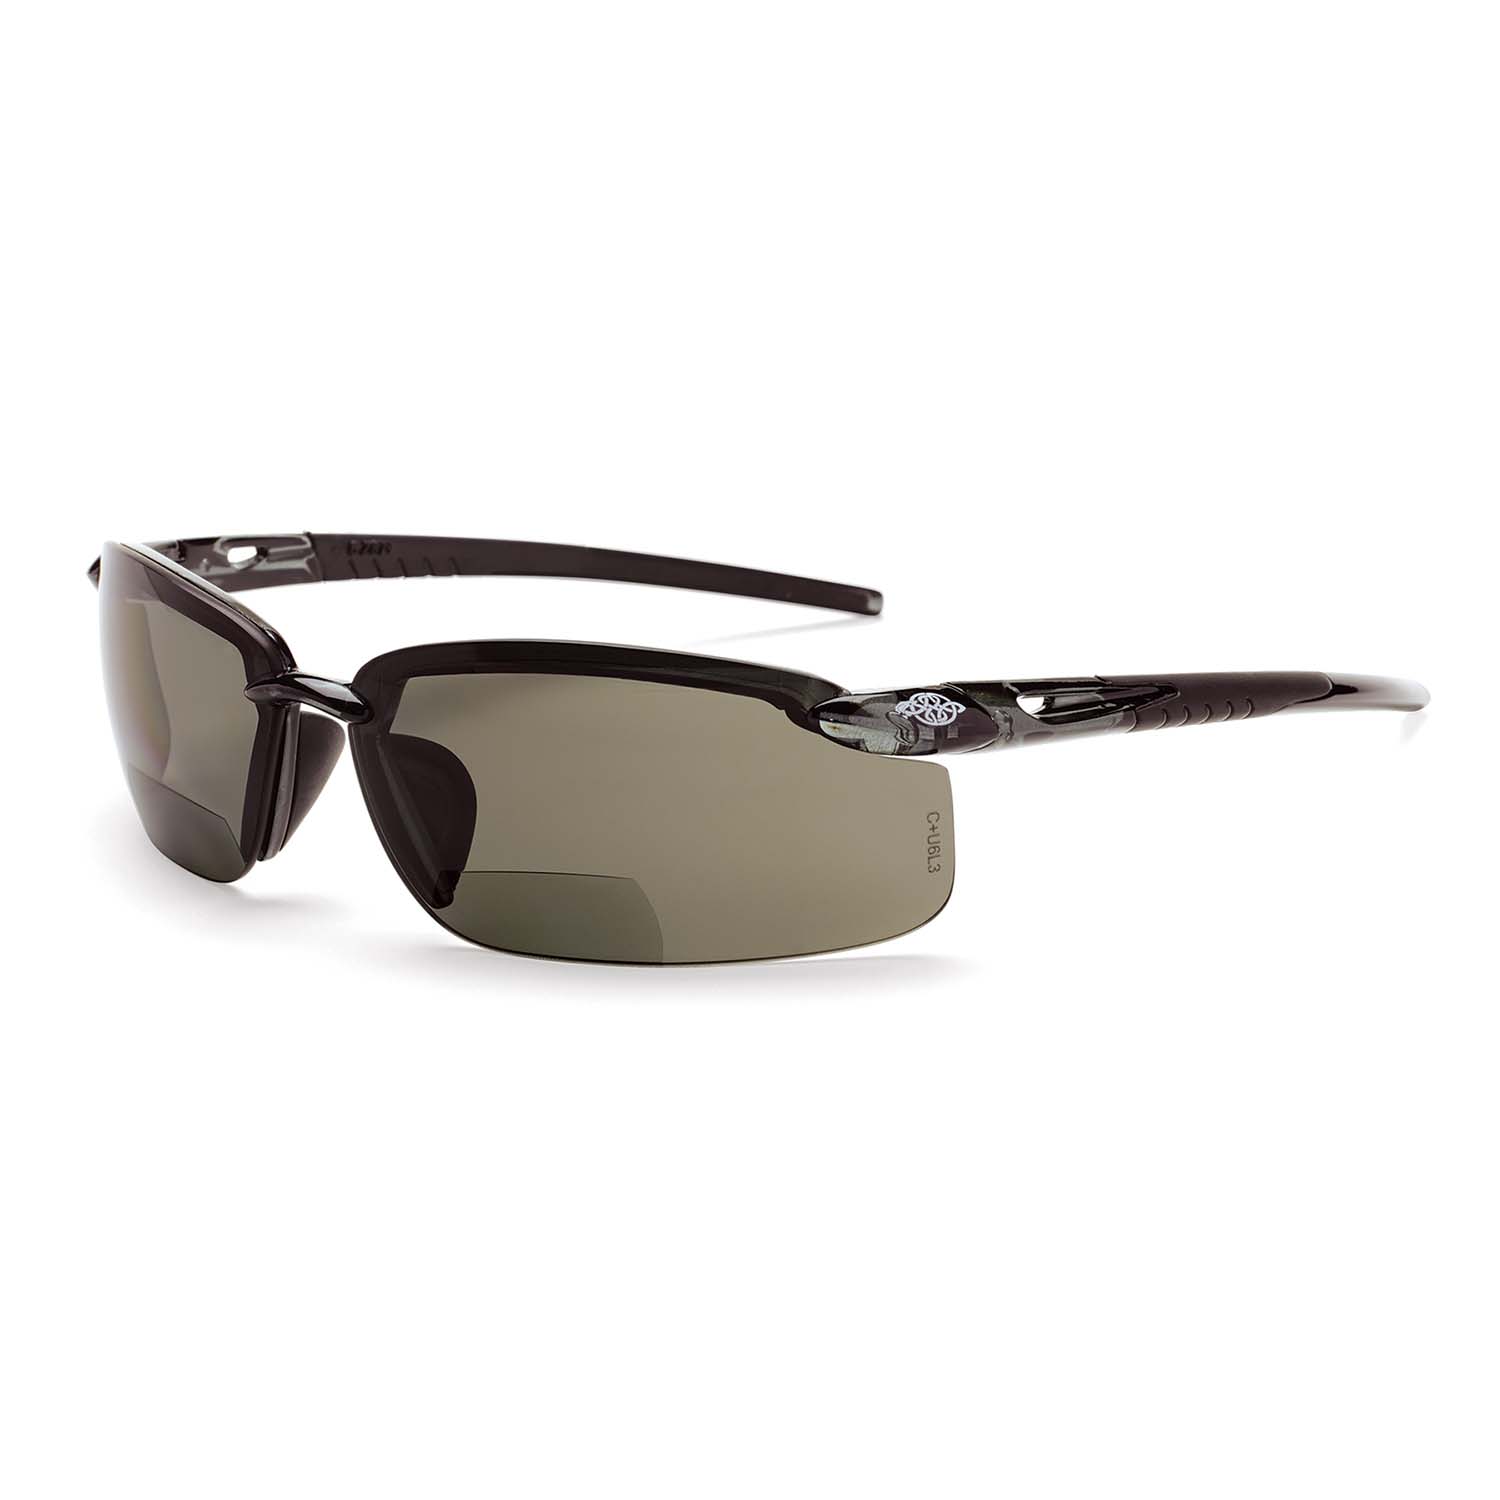 ES5 Bifocal Safety Eyewear - Crystal Black Frame - Polarized Smoke Lens - 2.0 Diopter